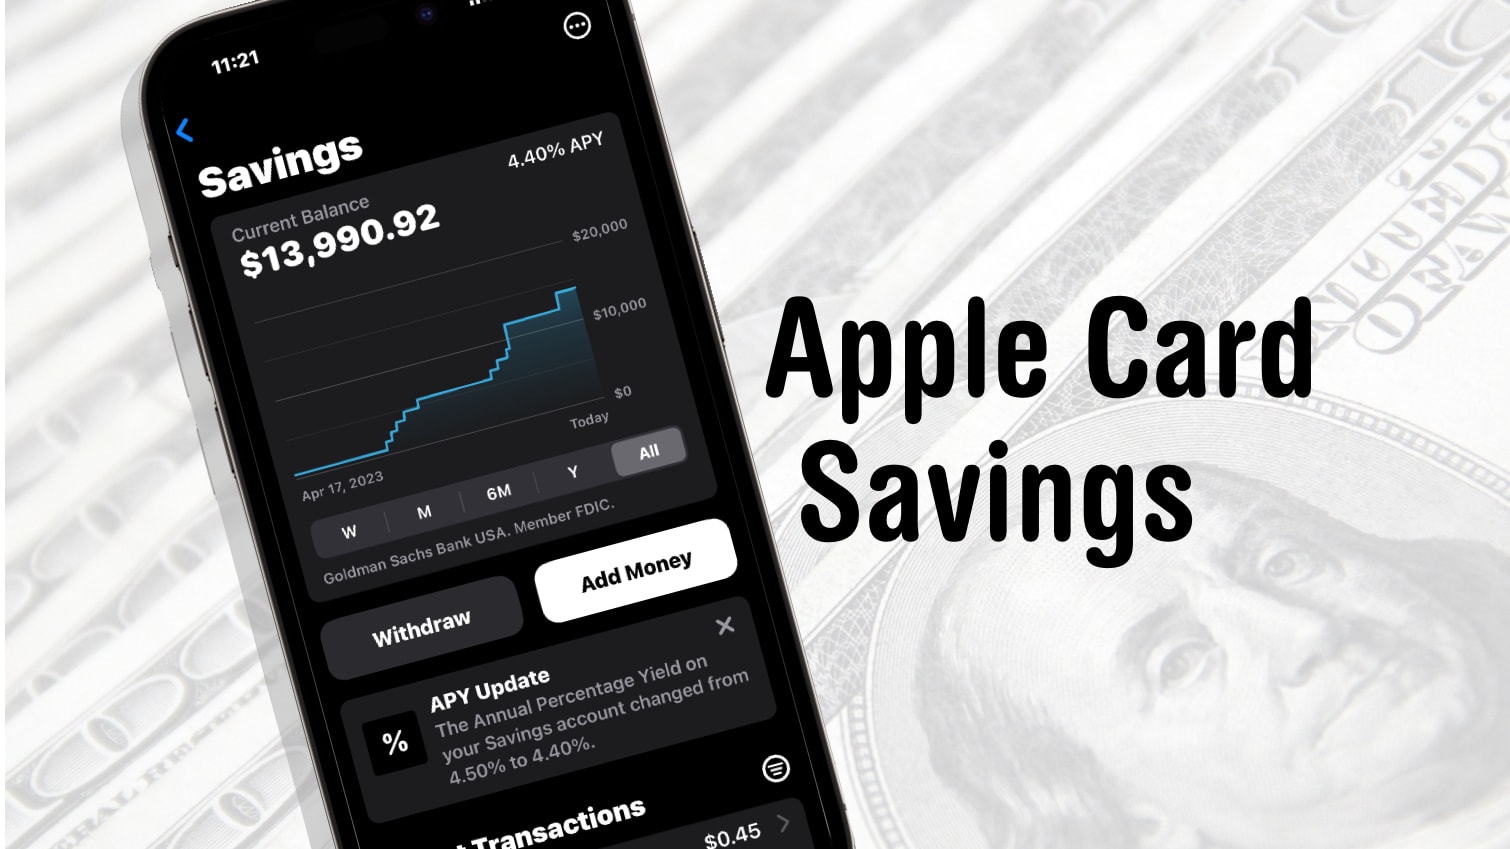 Apple Card Savings account at 4.4%